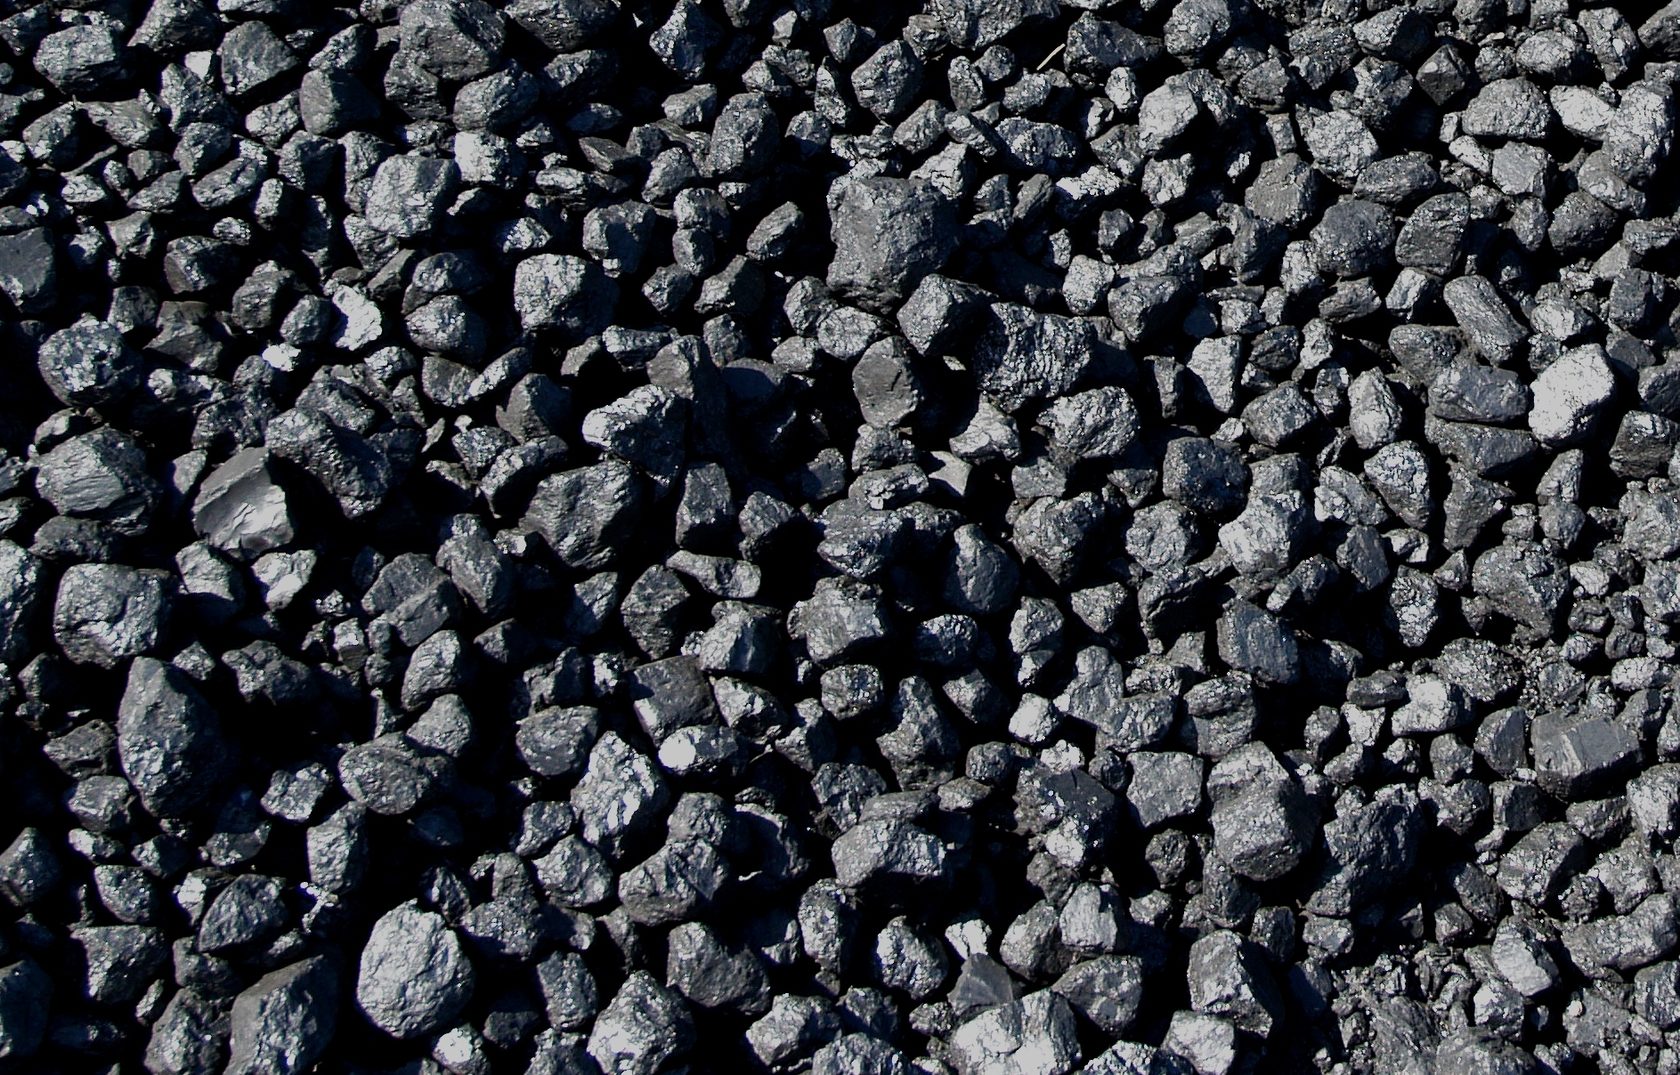 Уголь В Рубцовске Где Купить Цена